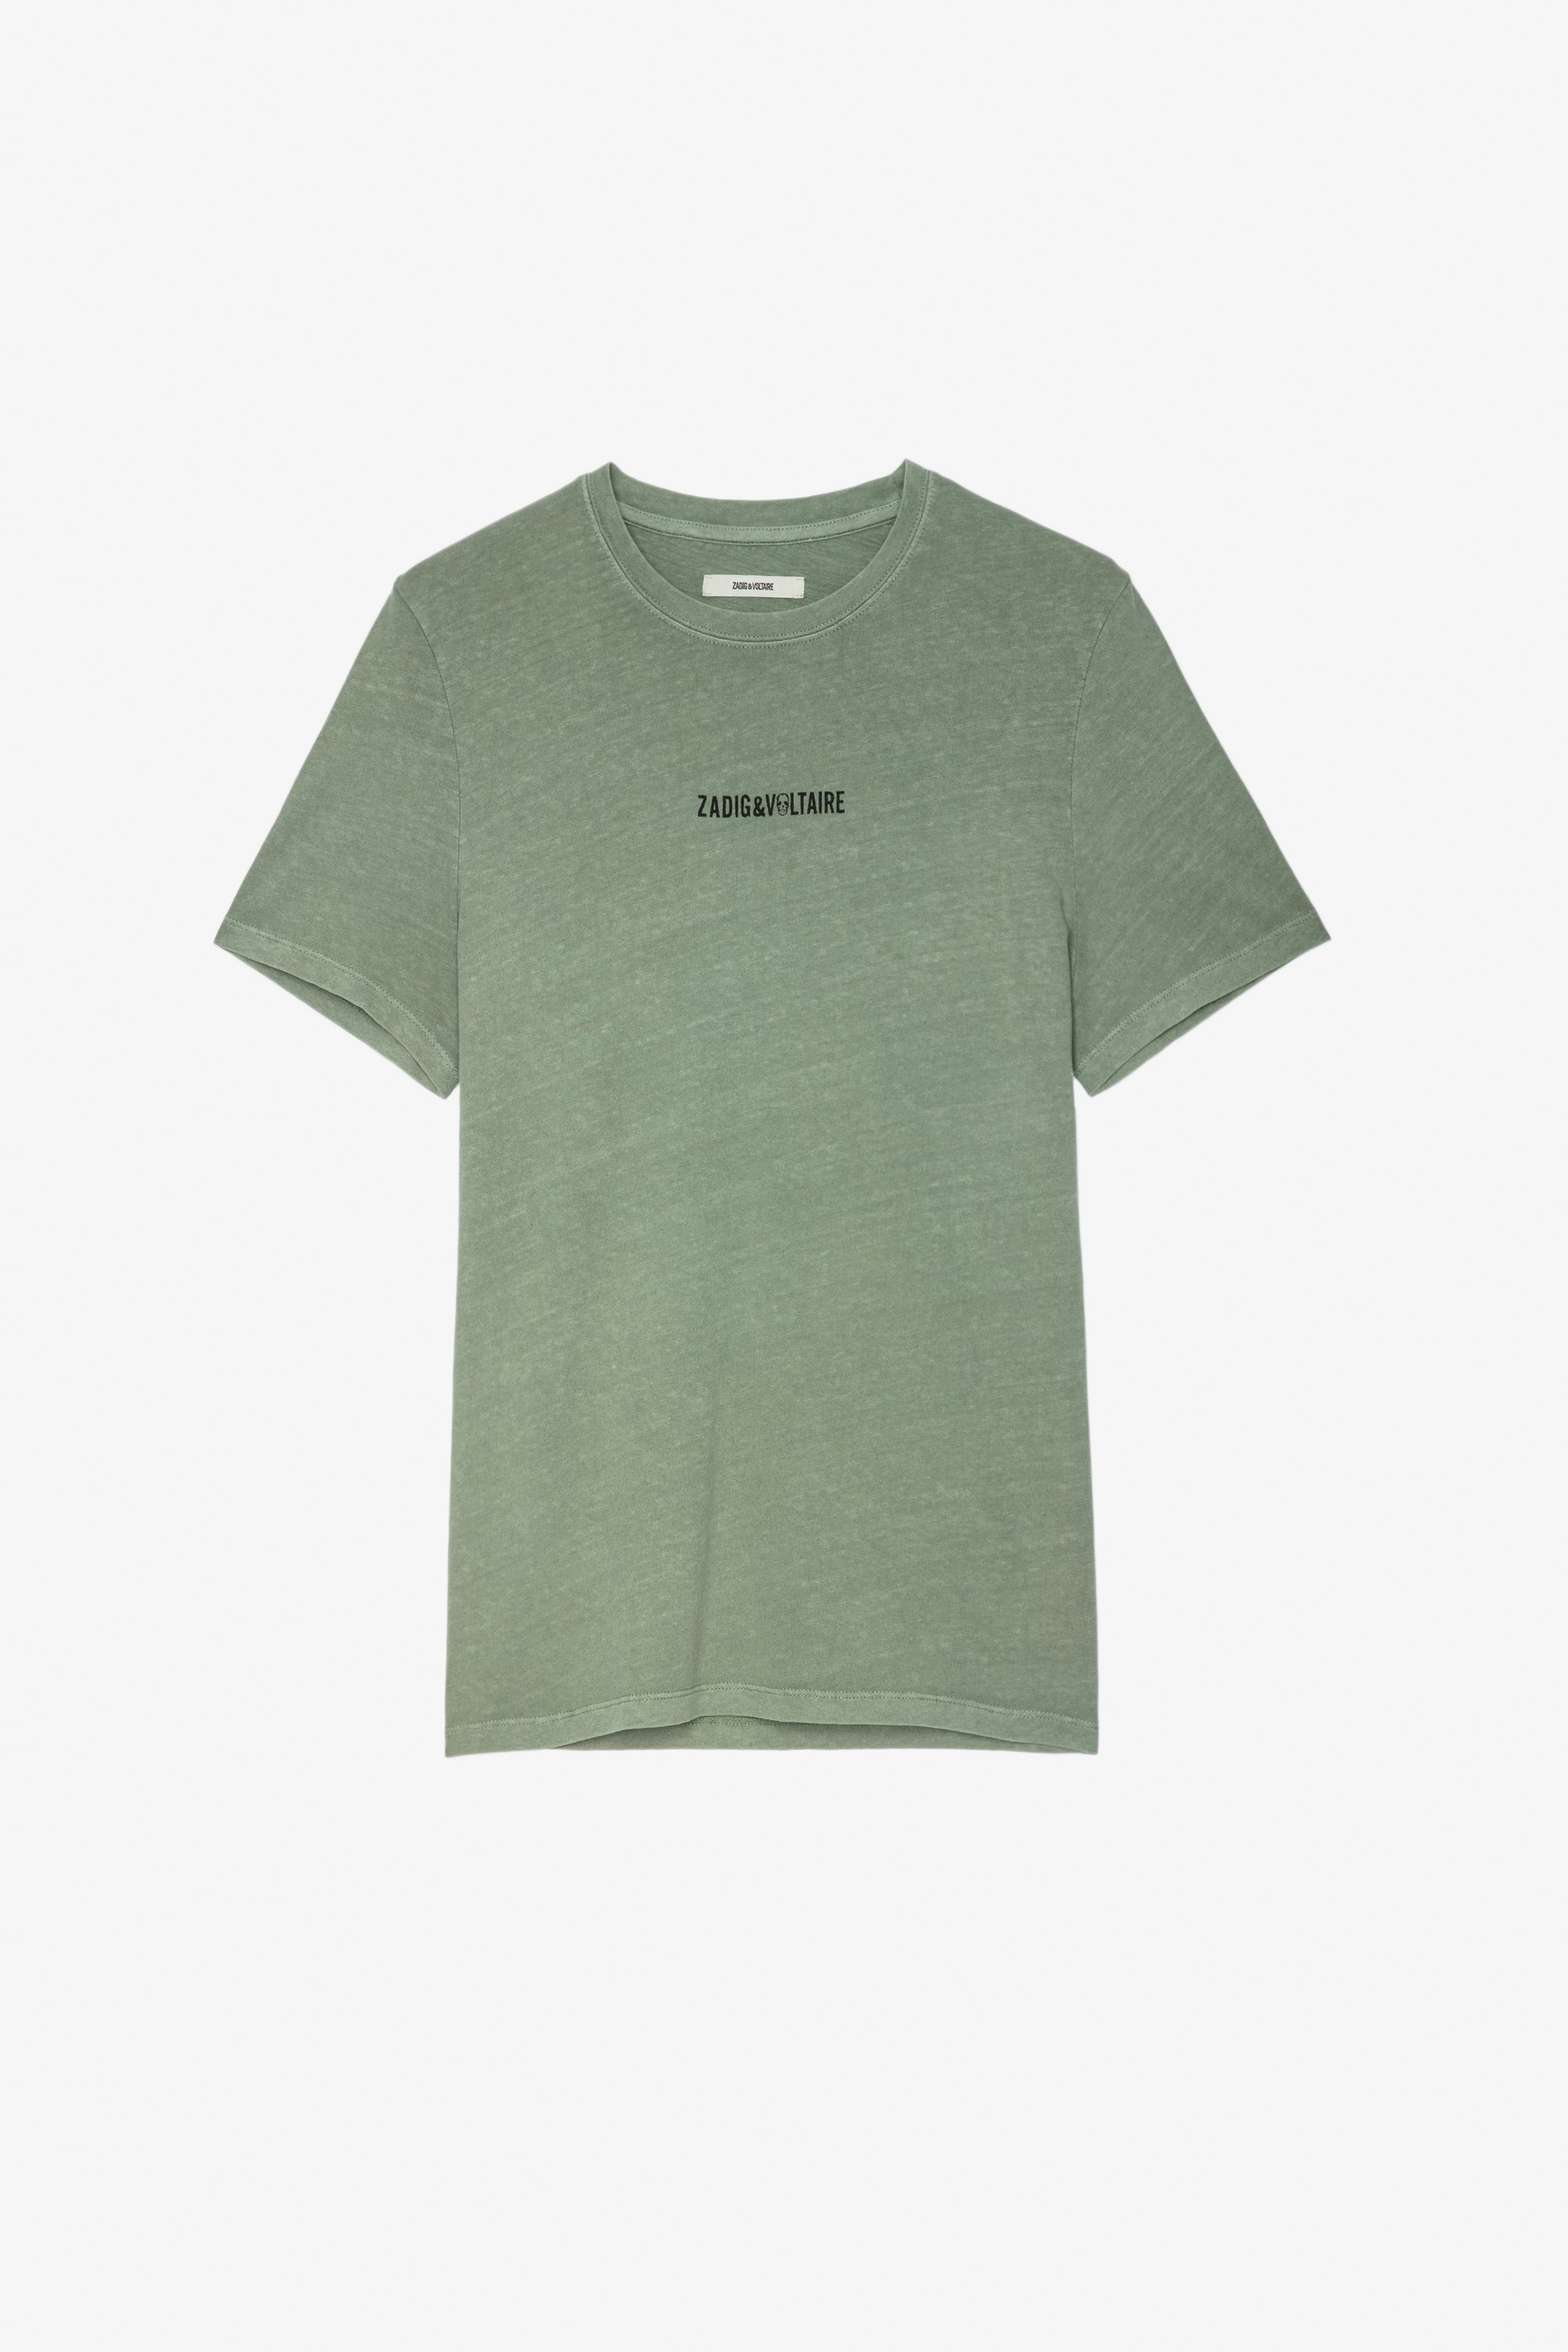 T-shirt Ted T-shirt in cotone verde con firma ZV sul davanti e scritta "Hédoniste" sul retro - Uomo